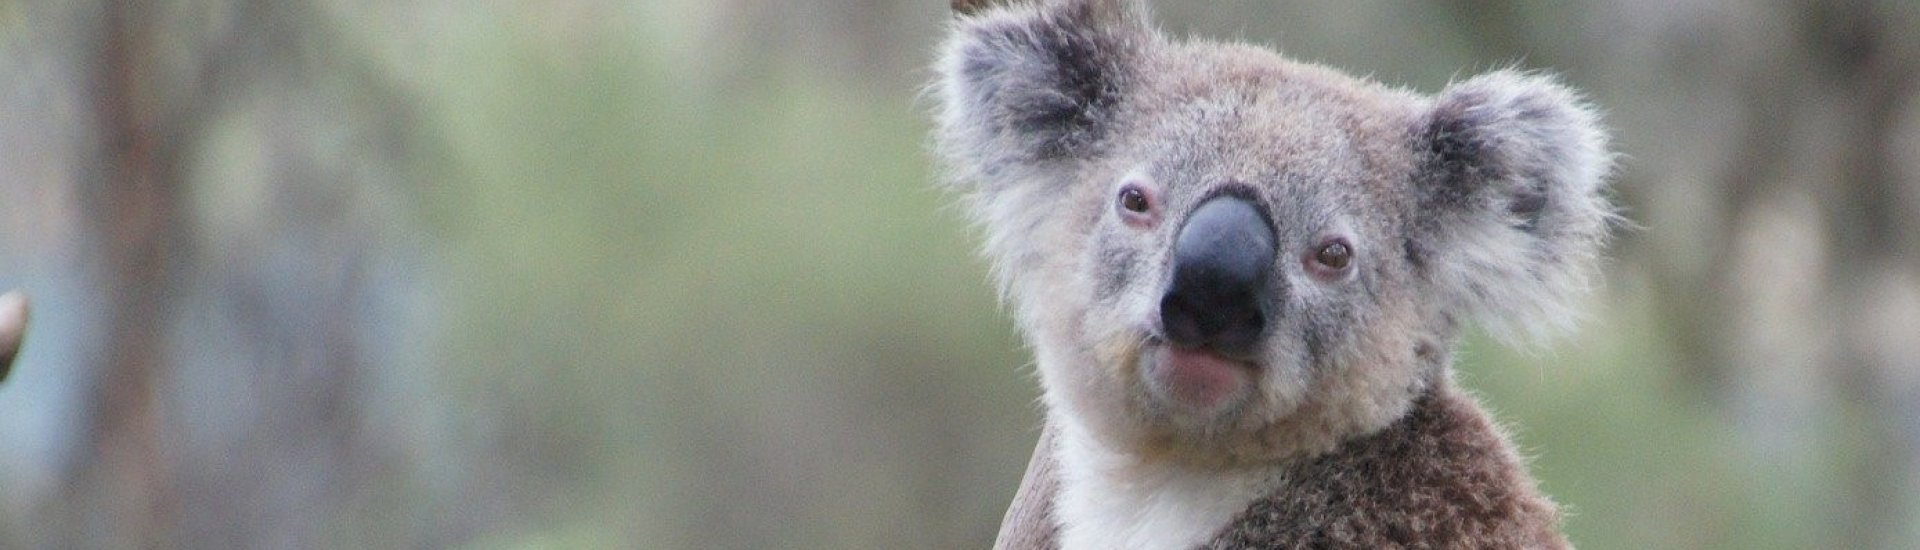 Koala at Phillips Island